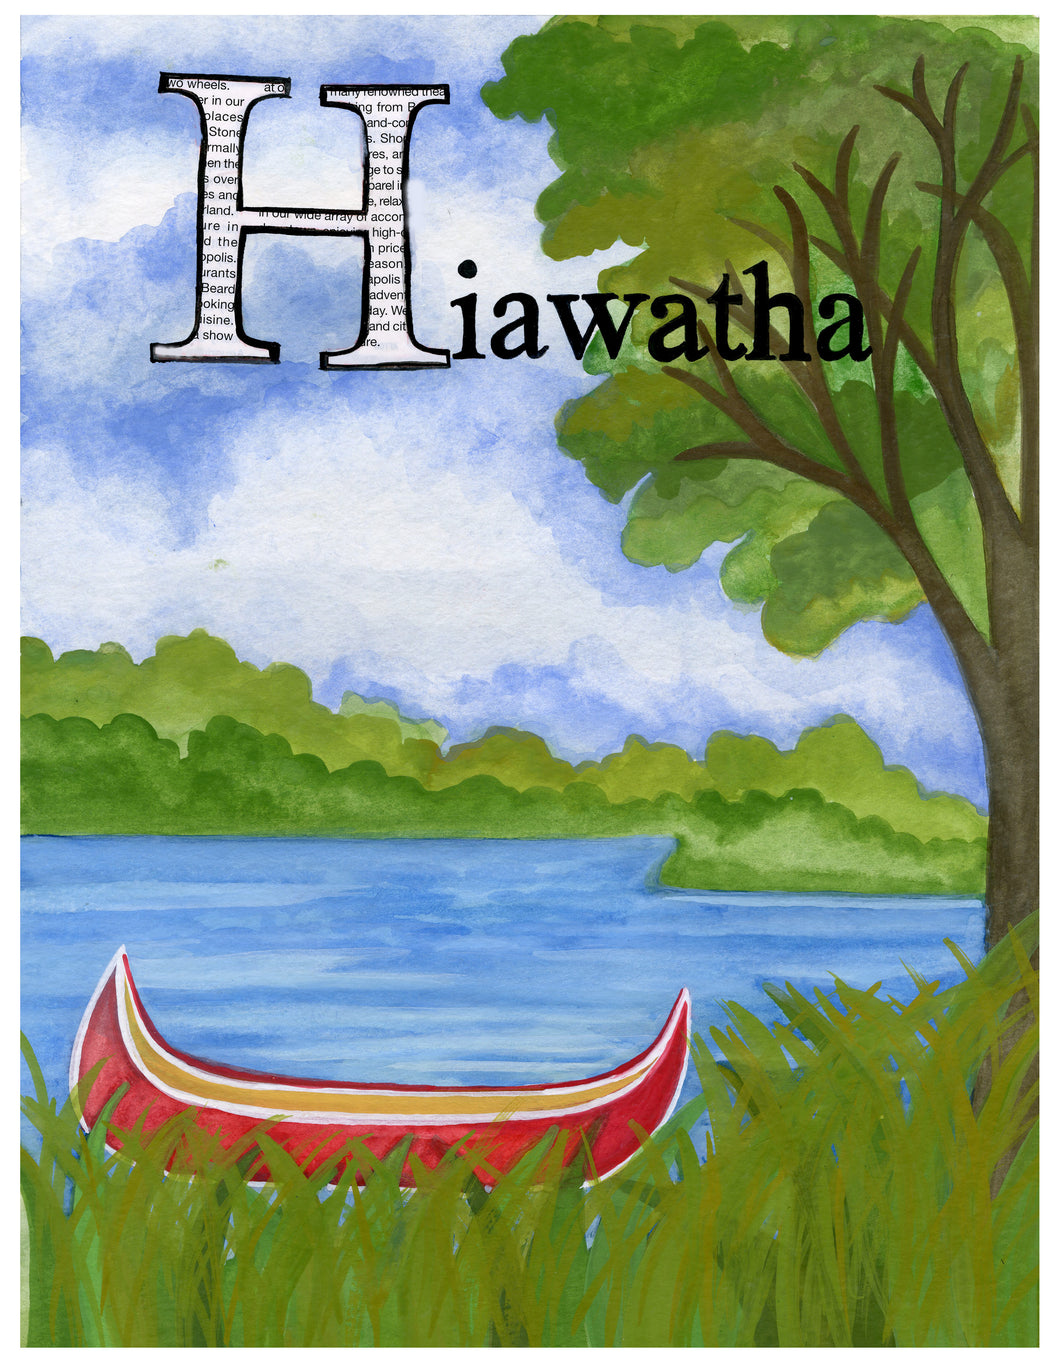 H is for Hiawatha